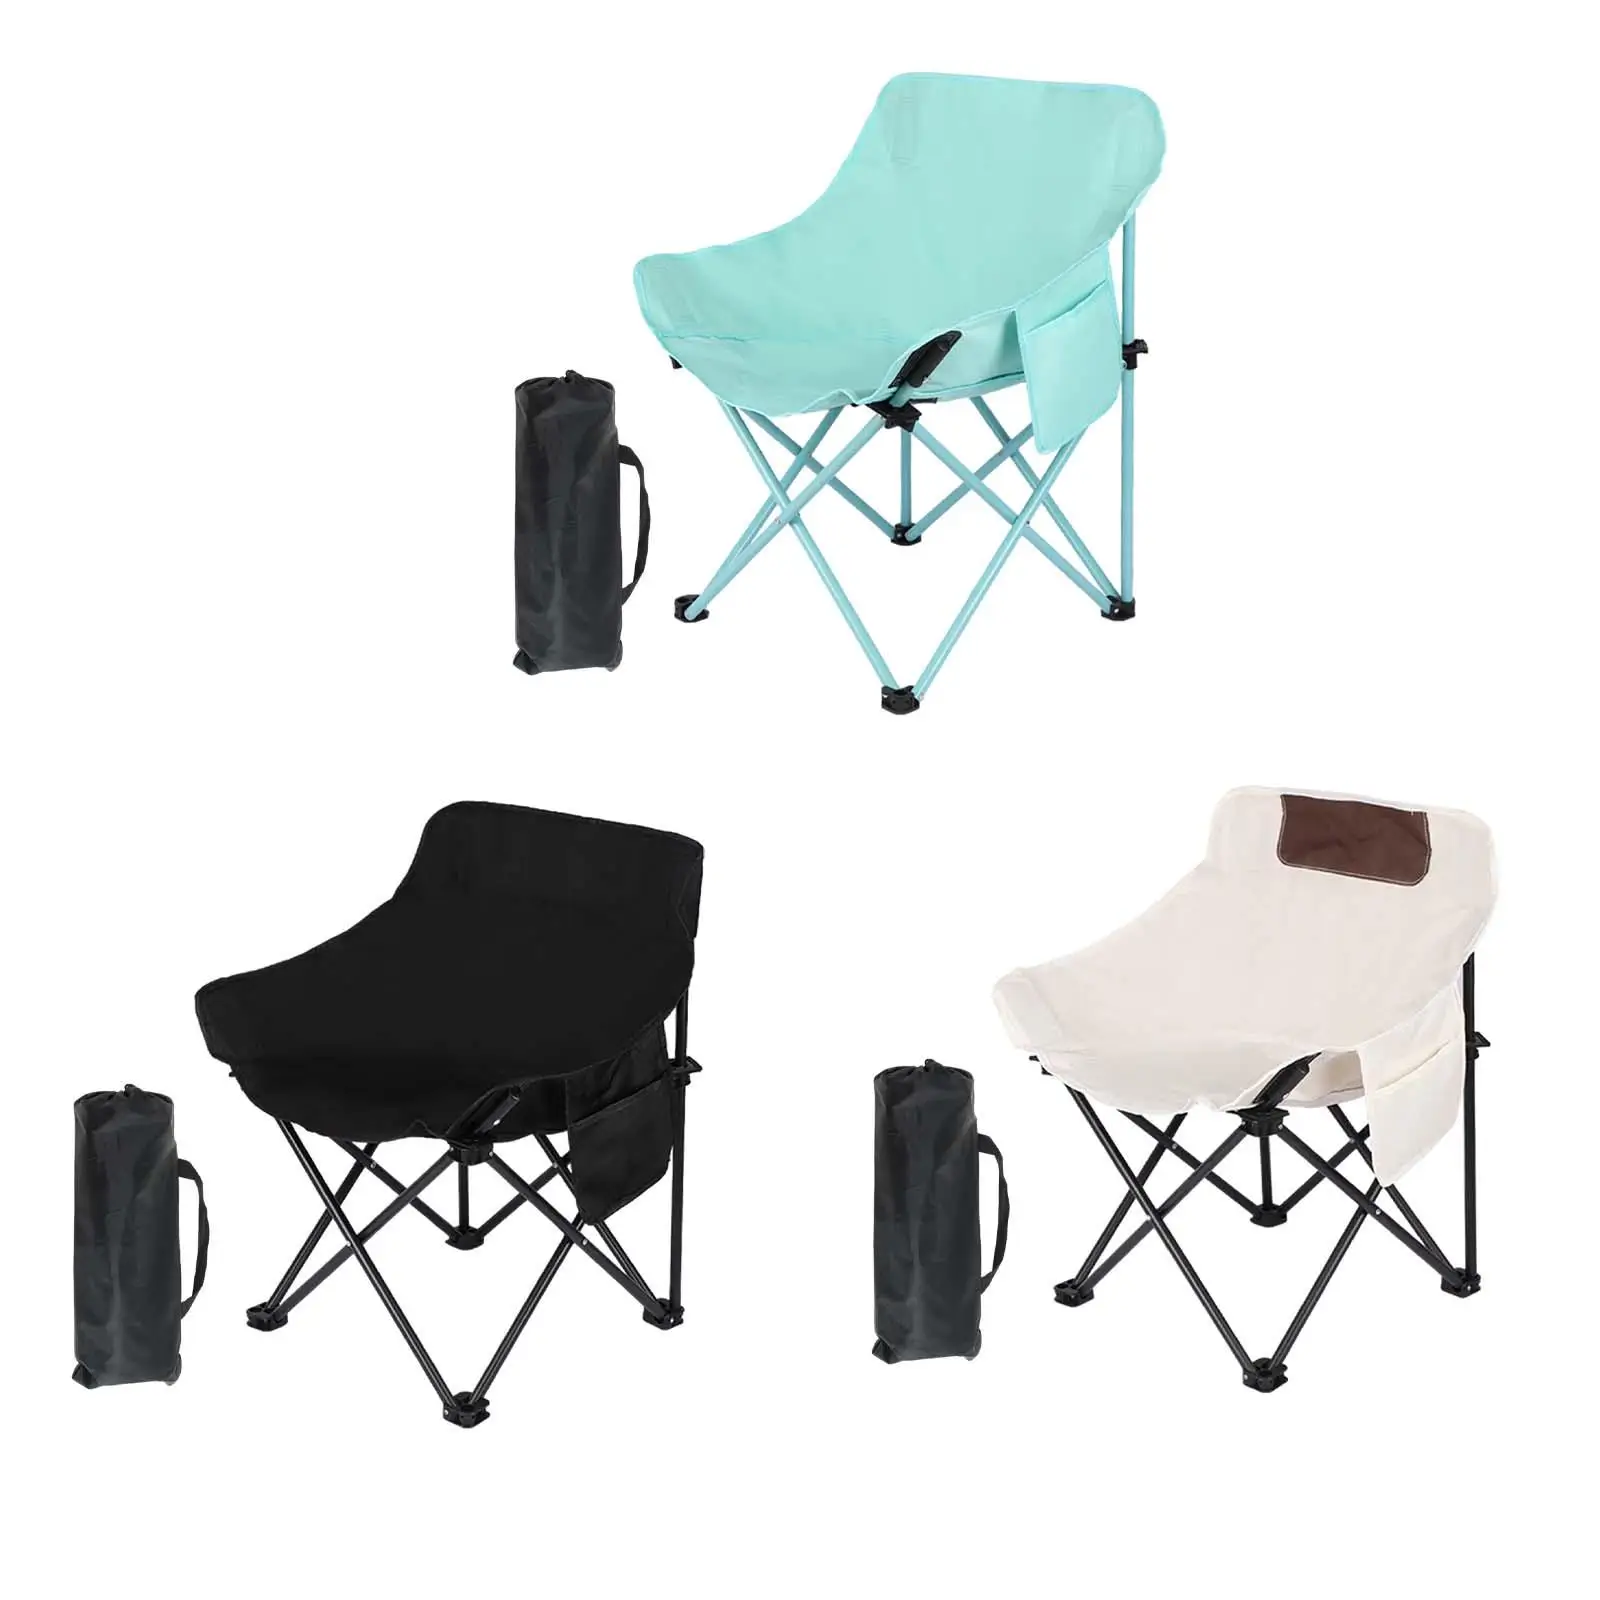 Folding Camping Chair Beach Chair Durable Portable Folded Folding Chair Outdoor Moon Chair for Garden Picnics BBQ Hiking